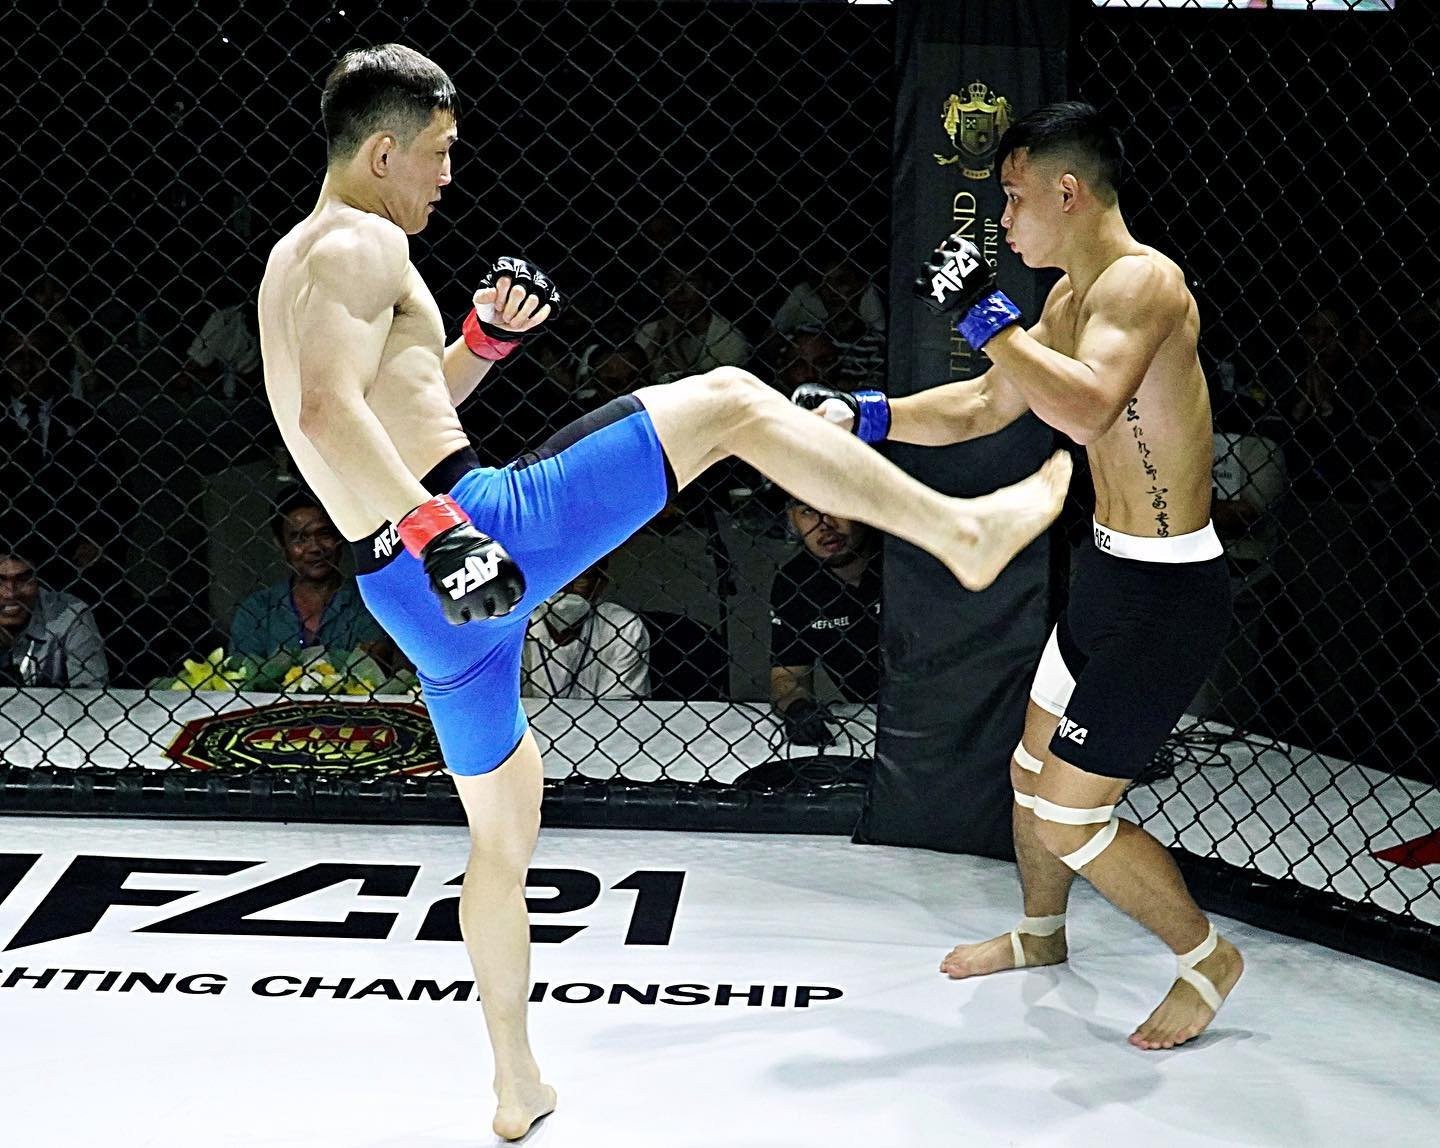 Võ sĩ Tán thủ thay thế “Quyền vương Thái Bình” đối đầu võ sĩ Hàn Quốc trên sàn MMA